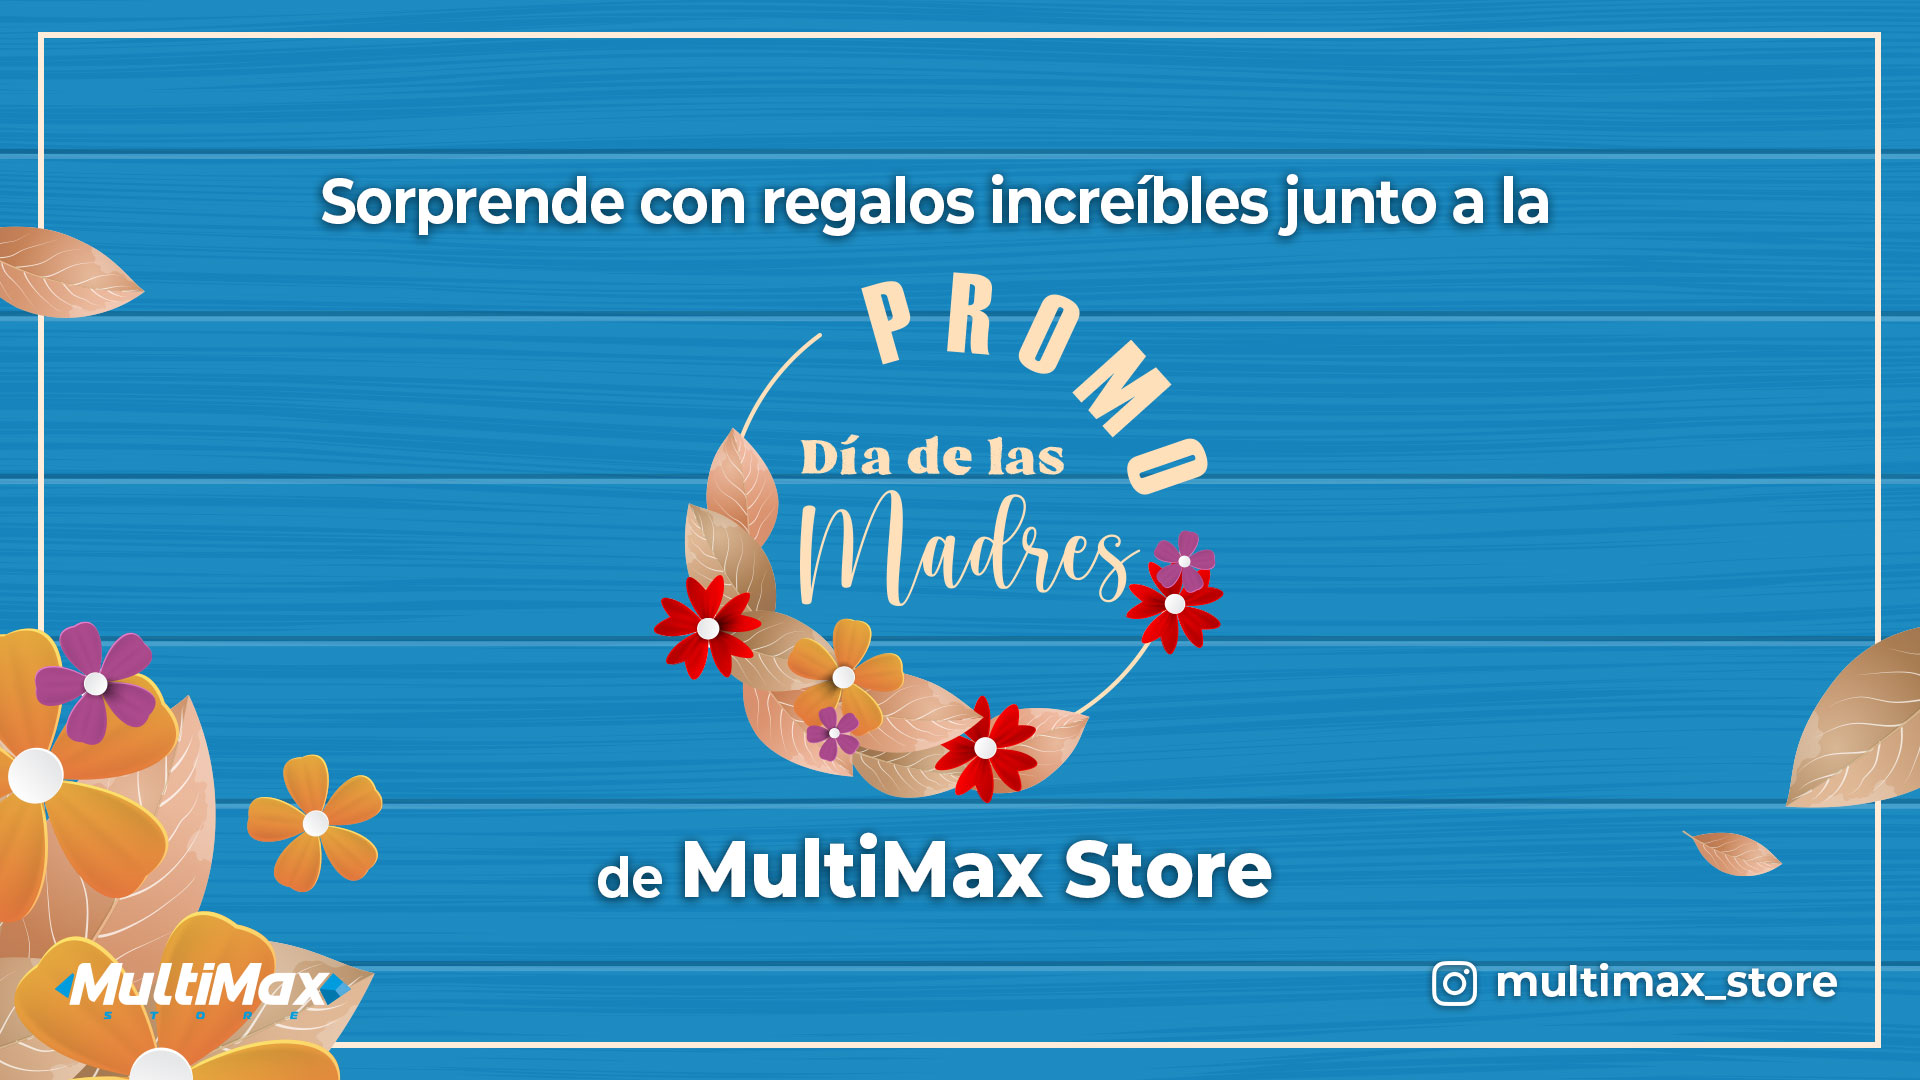 Sorprende con regalos increíbles junto a la “Promo Día de las Madres” de MultiMax Store